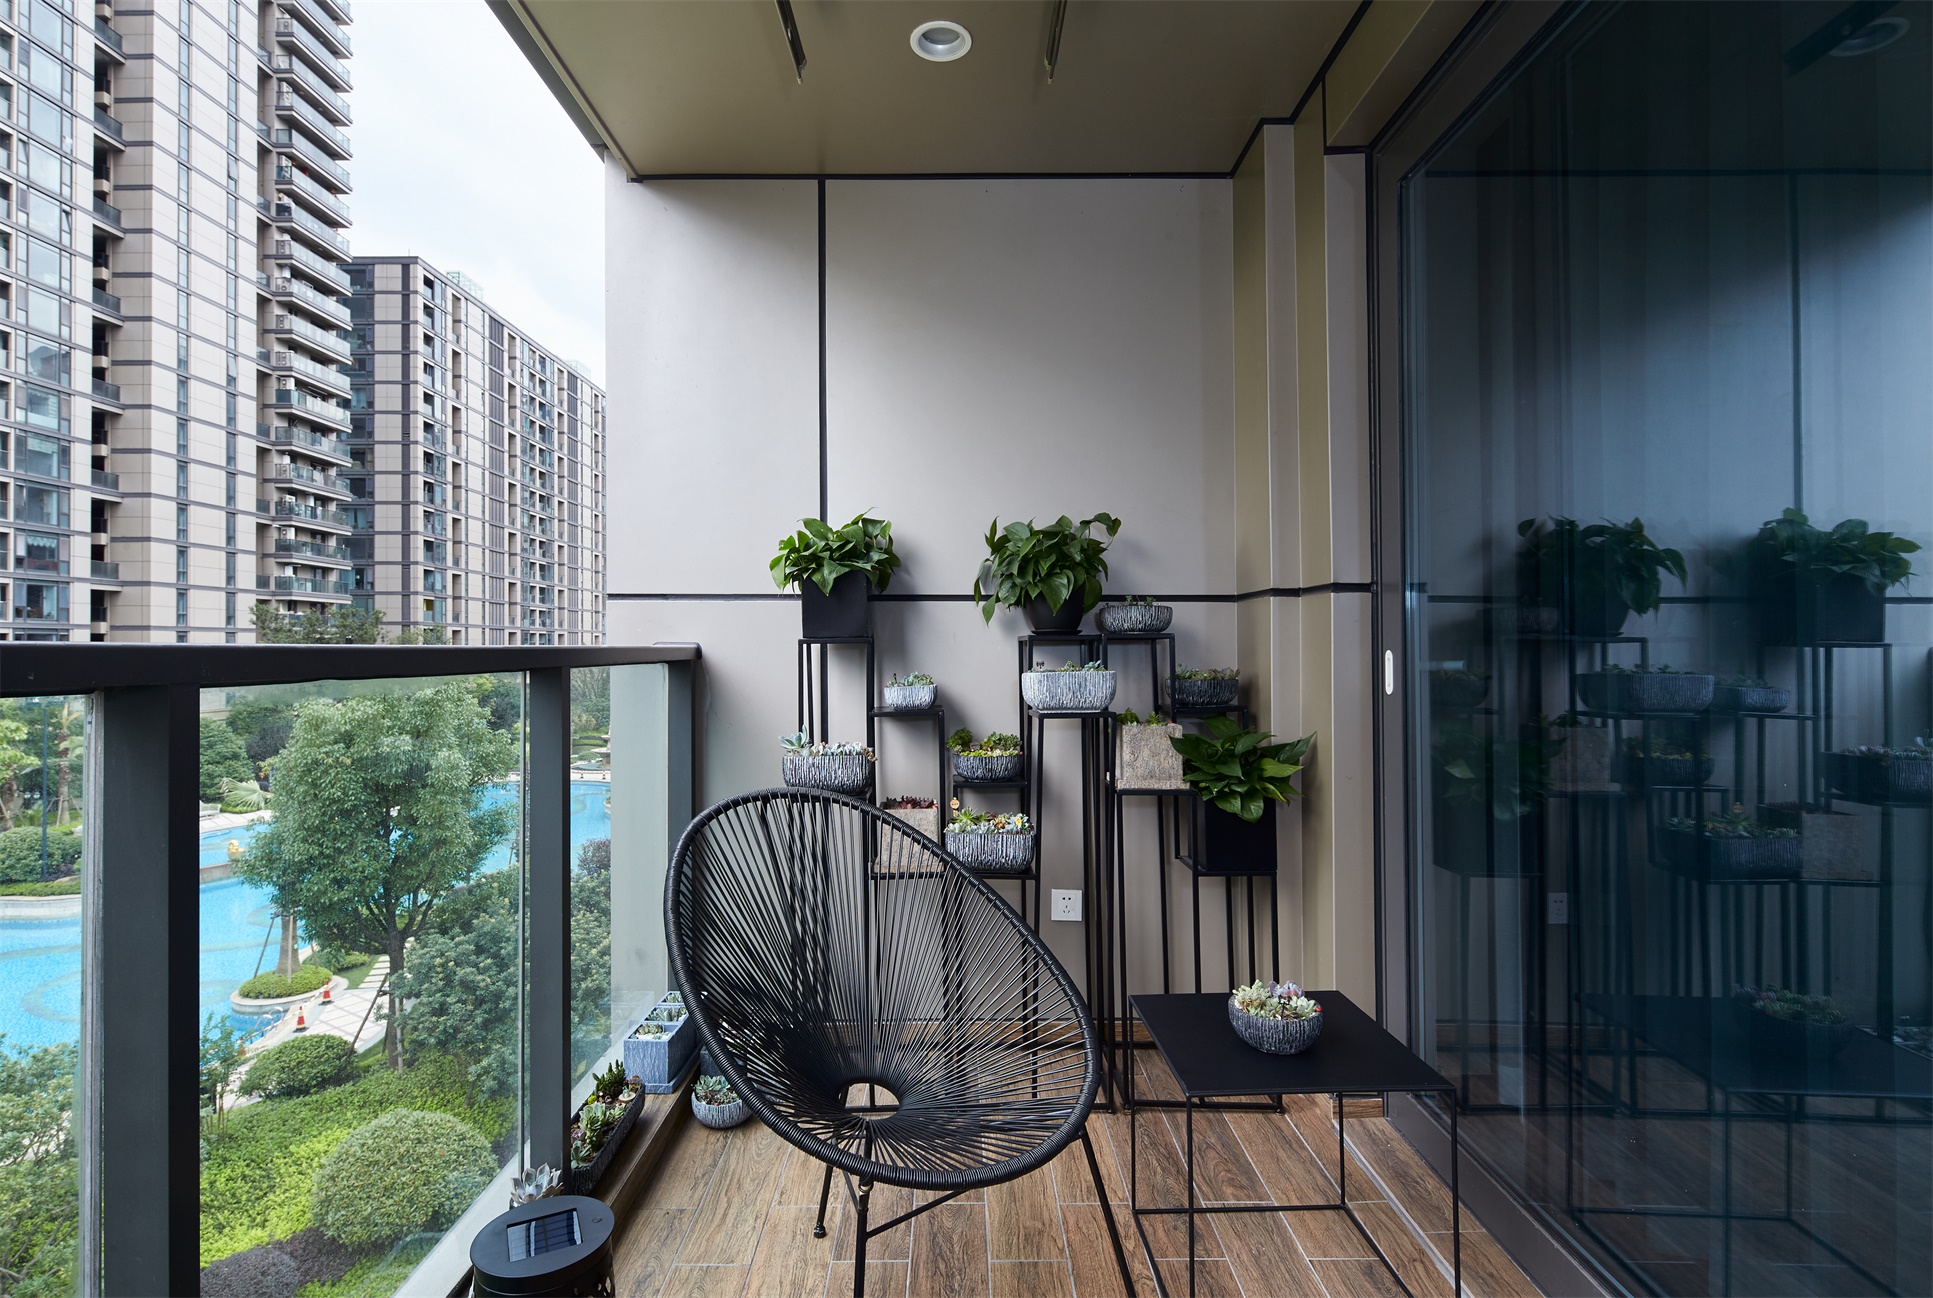 阳台在满足功能的同时丰富了空间的层次感，用线条勾勒出一个简单现代的温馨画面。